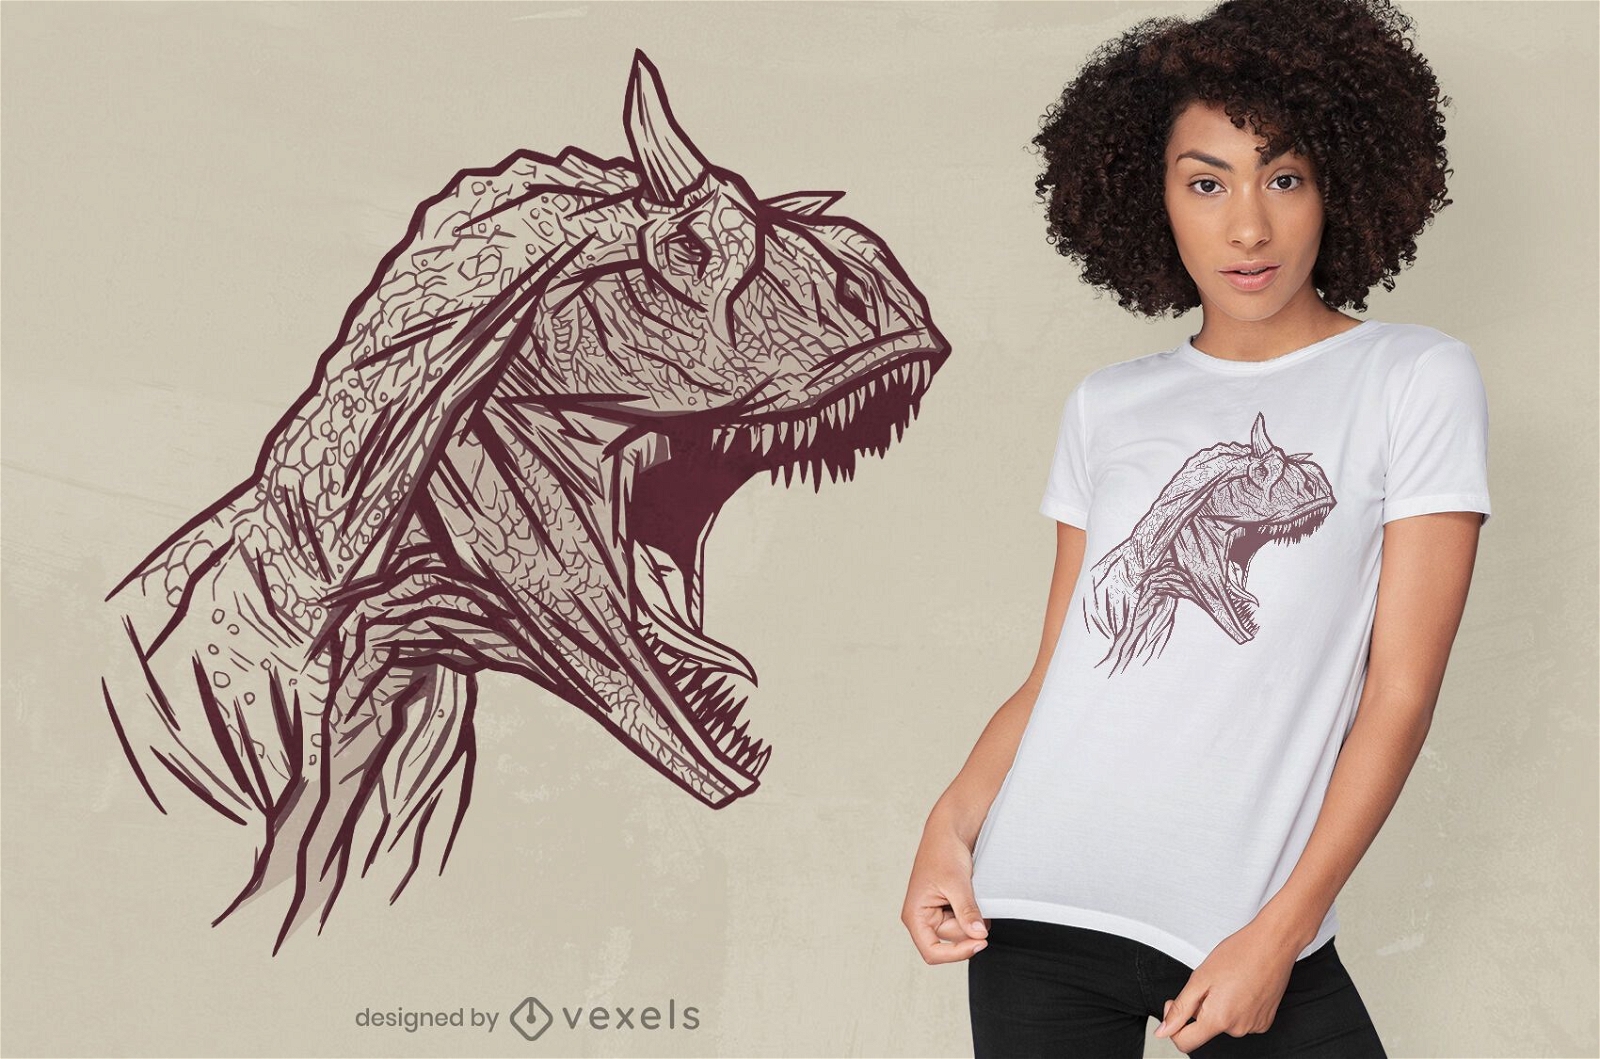 Dise?o de camiseta con cara de dinosaurio carnotaurus.